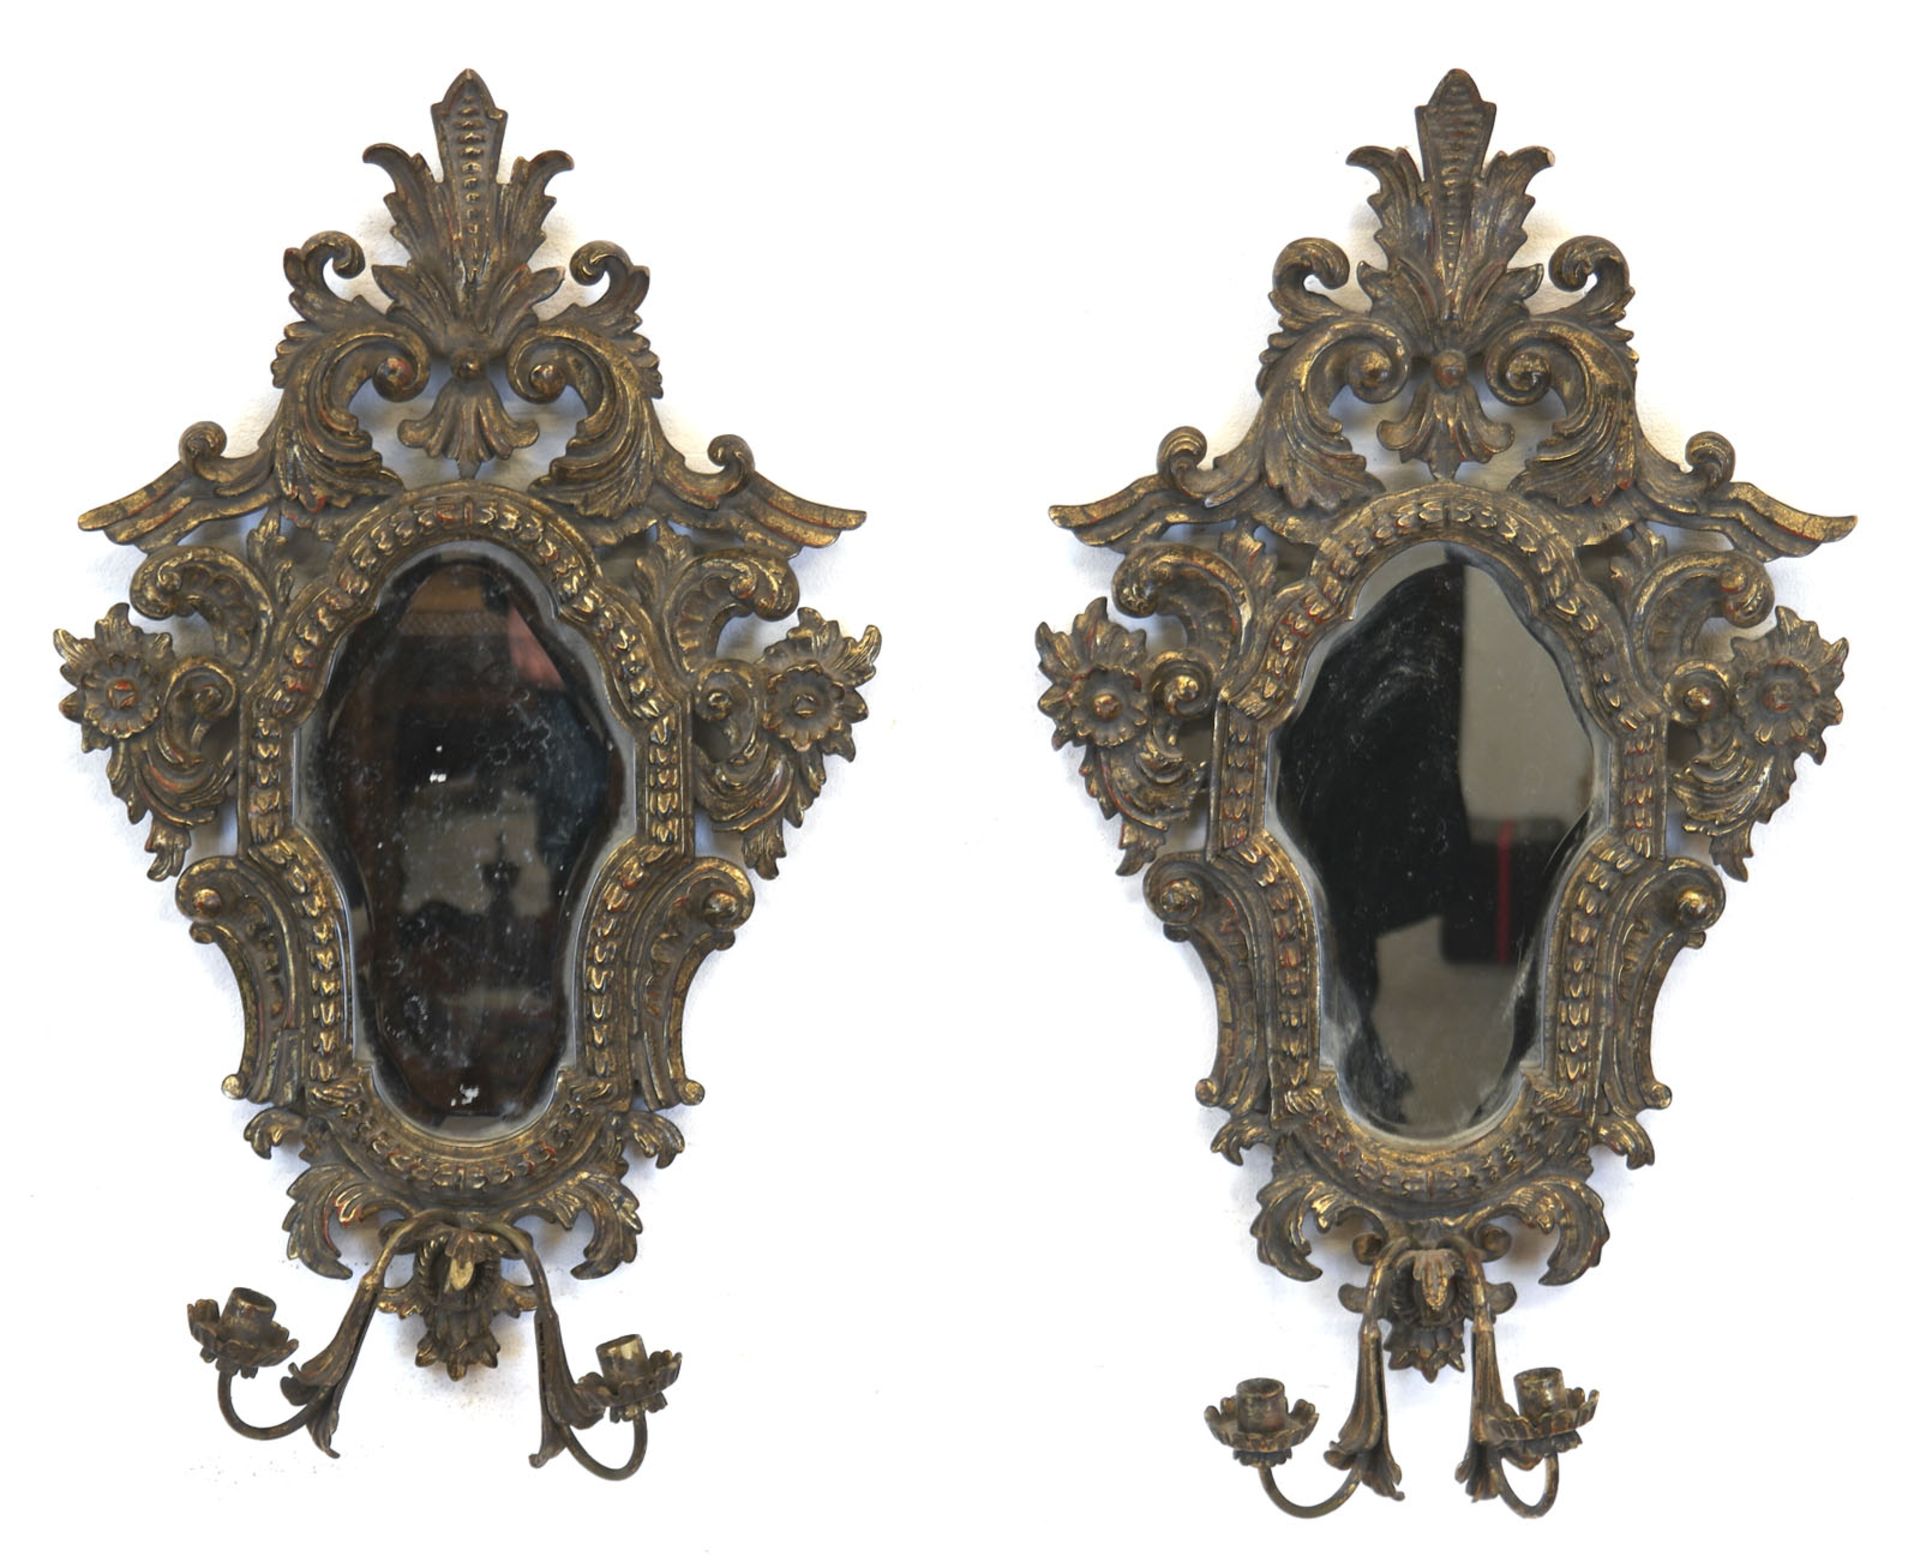 Paar Spiegel im Barockstil, Holz, reich floral geschnitzt, stuckiert und vergoldet, mit 2 Leuchtera